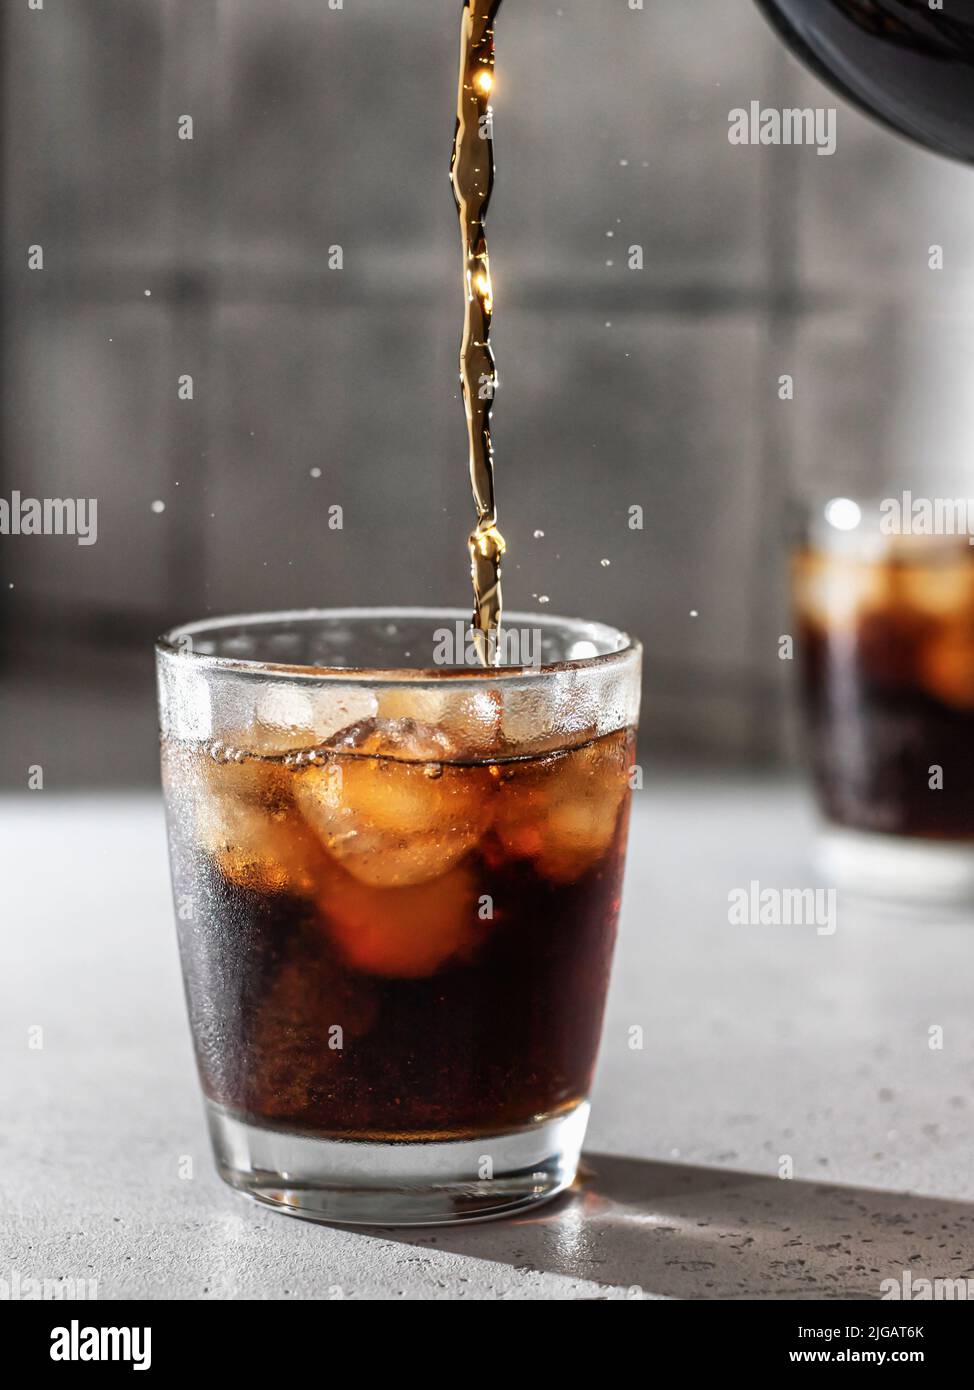 Verser le Cola ou le cocktail Cuba libre dans un verre avec des glaçons. Boisson non alcoolisée avec éclaboussures. Orientation verticale Banque D'Images